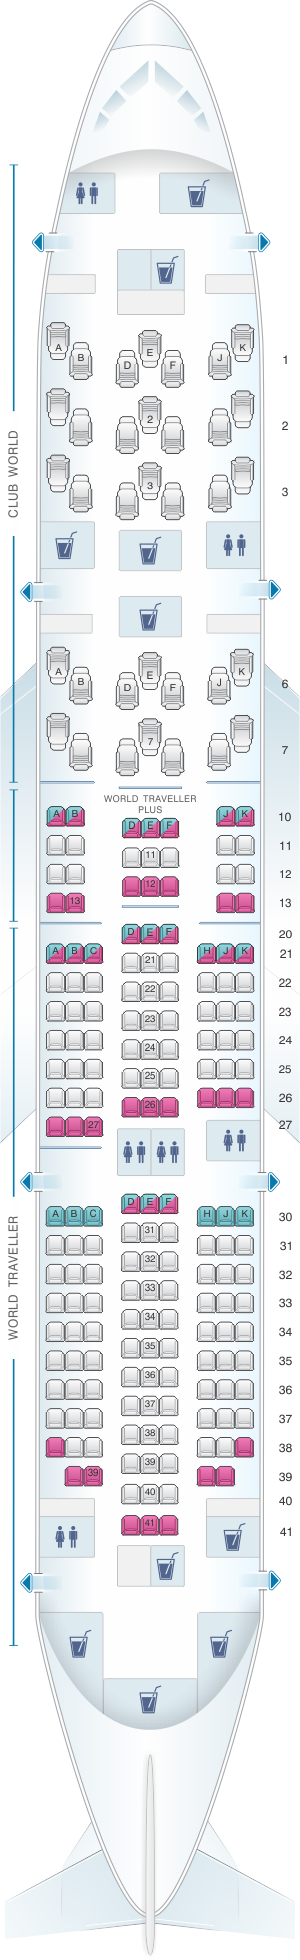 british airways 787 seat plan